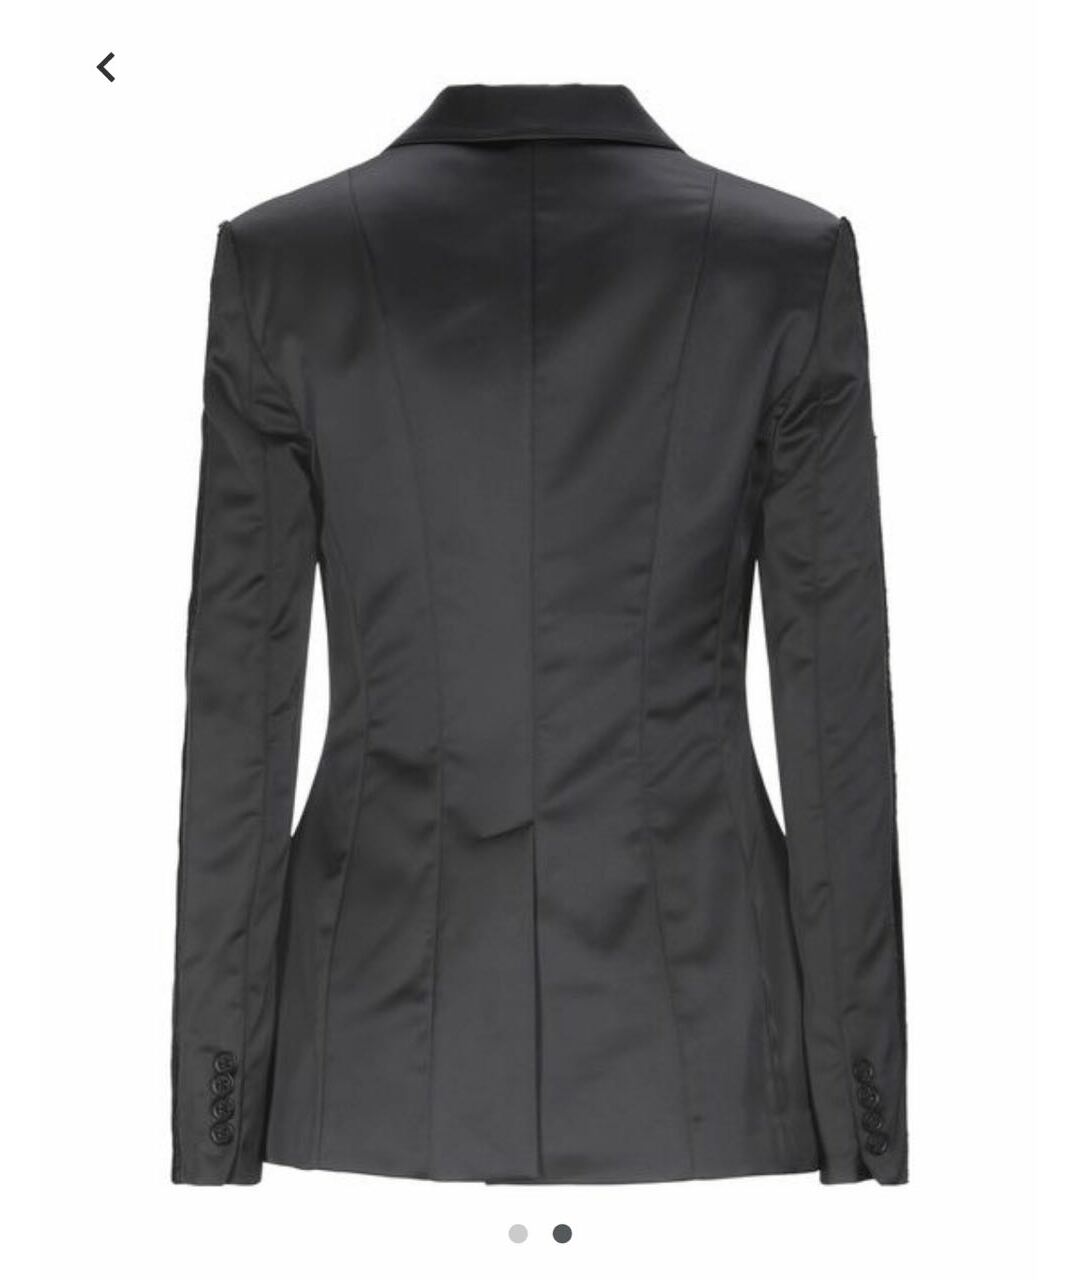 GAELLE BONHEUR Черный атласный жакет/пиджак, фото 2